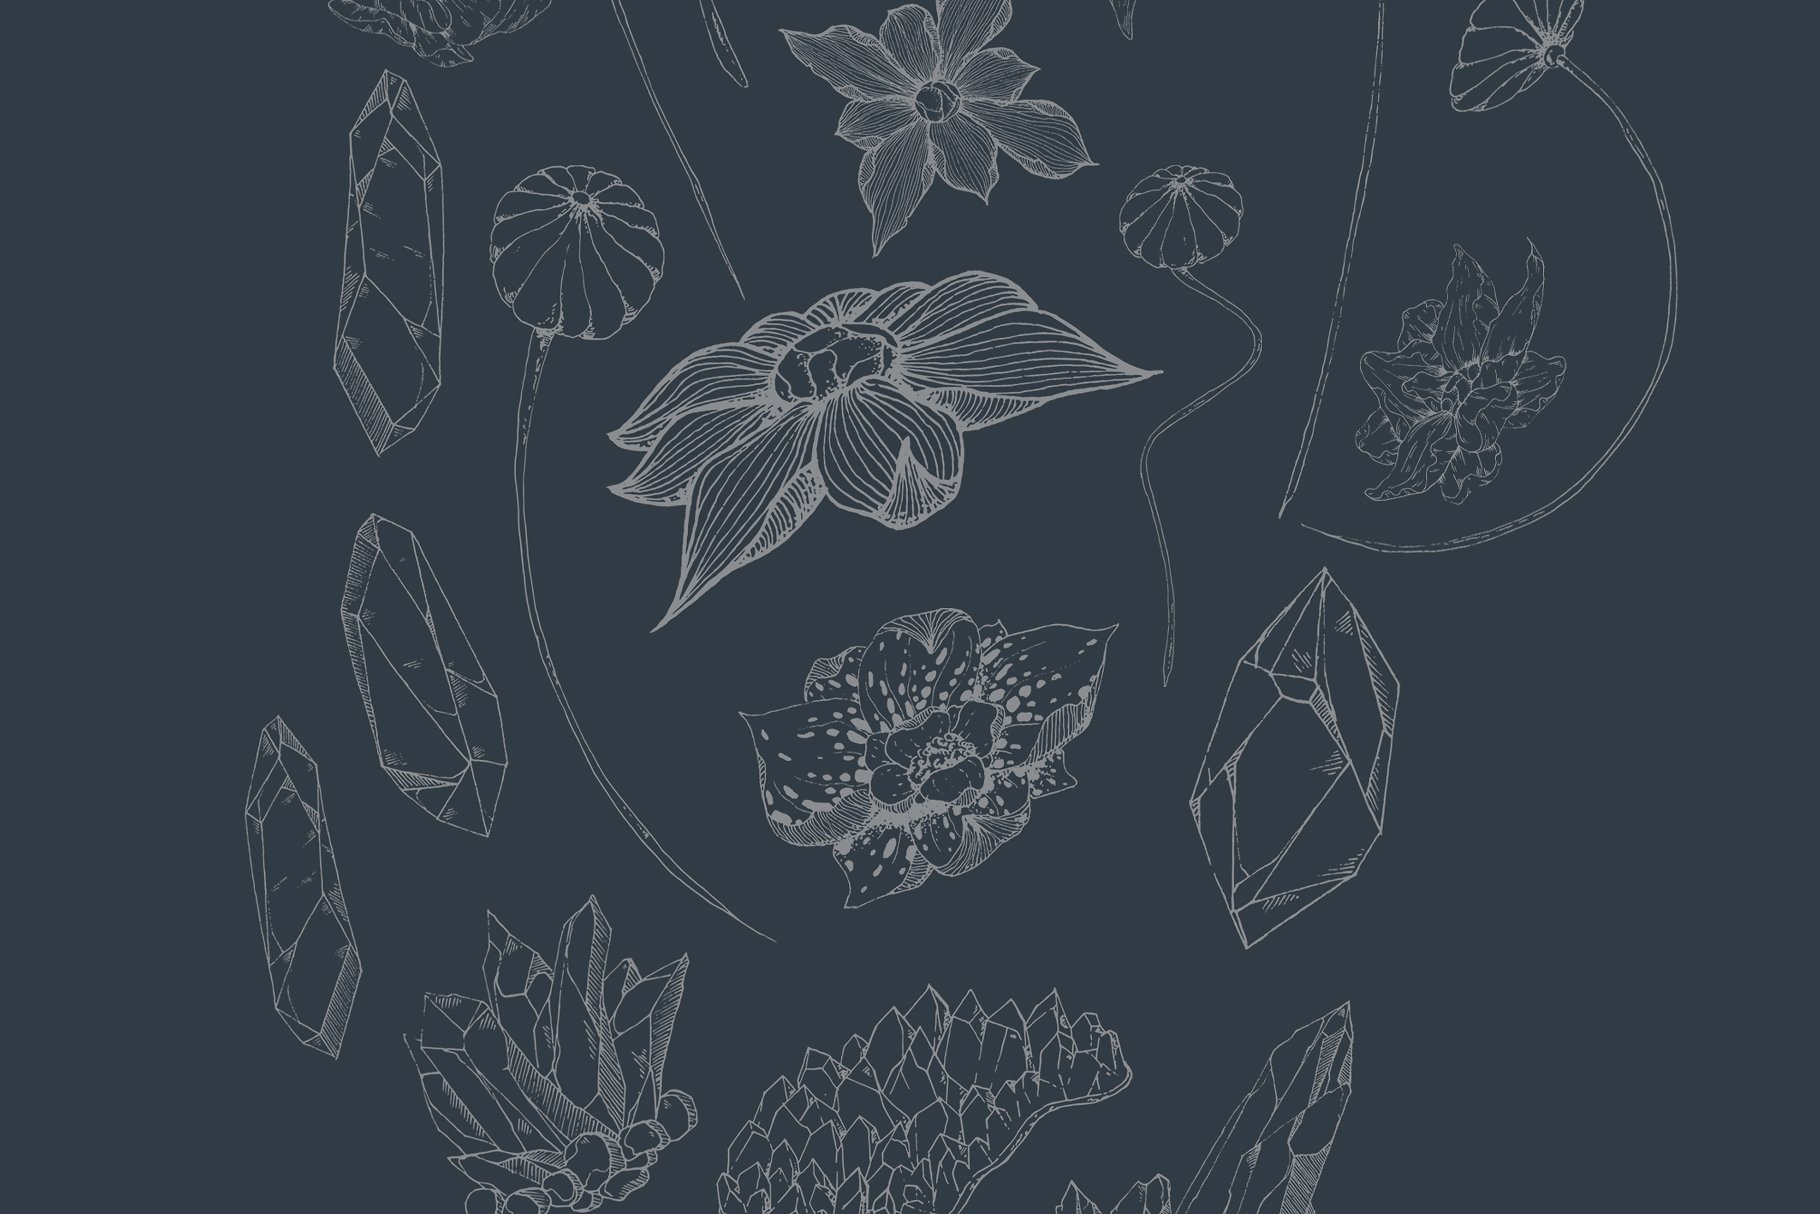 虚实结合黑色背景手绘矢量花卉图形素材 Black Orchid Illustration Set插图(4)